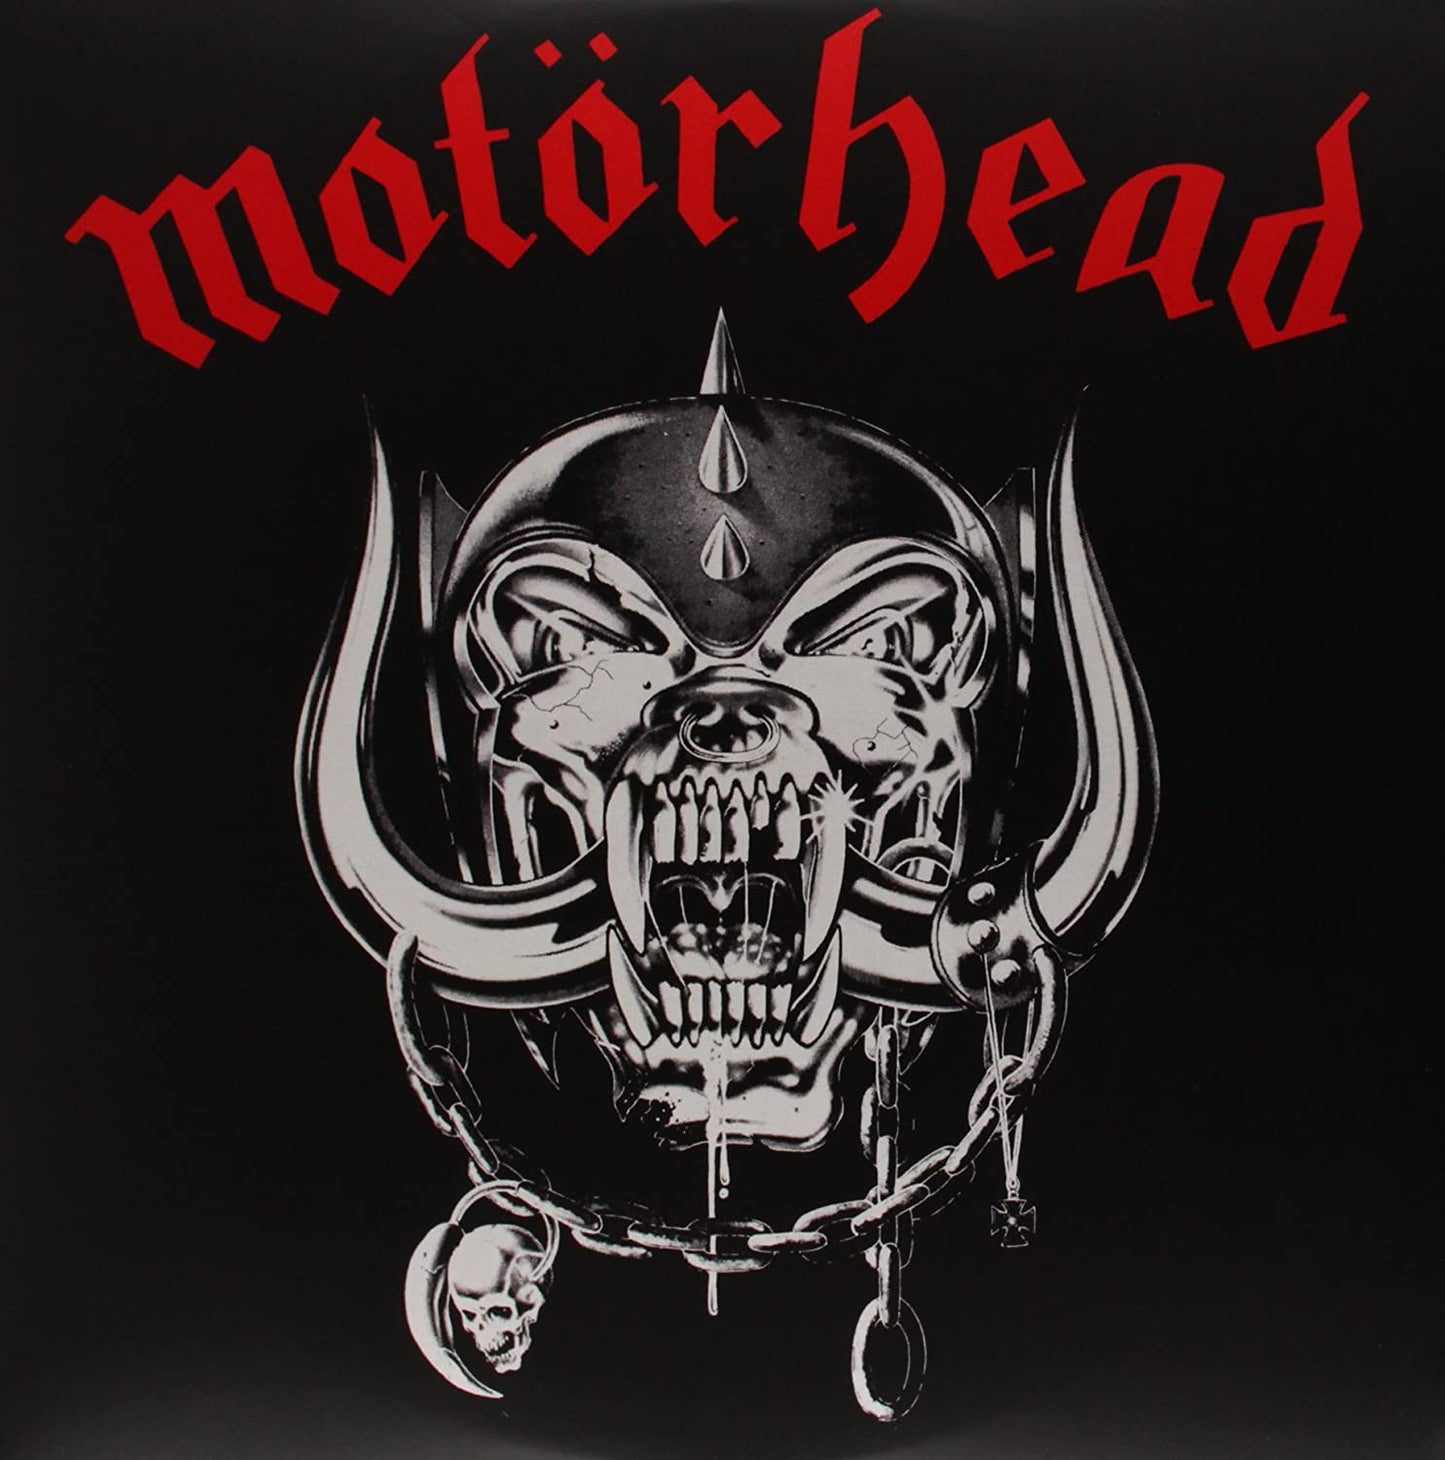 Motorhead/Motorhead [LP]